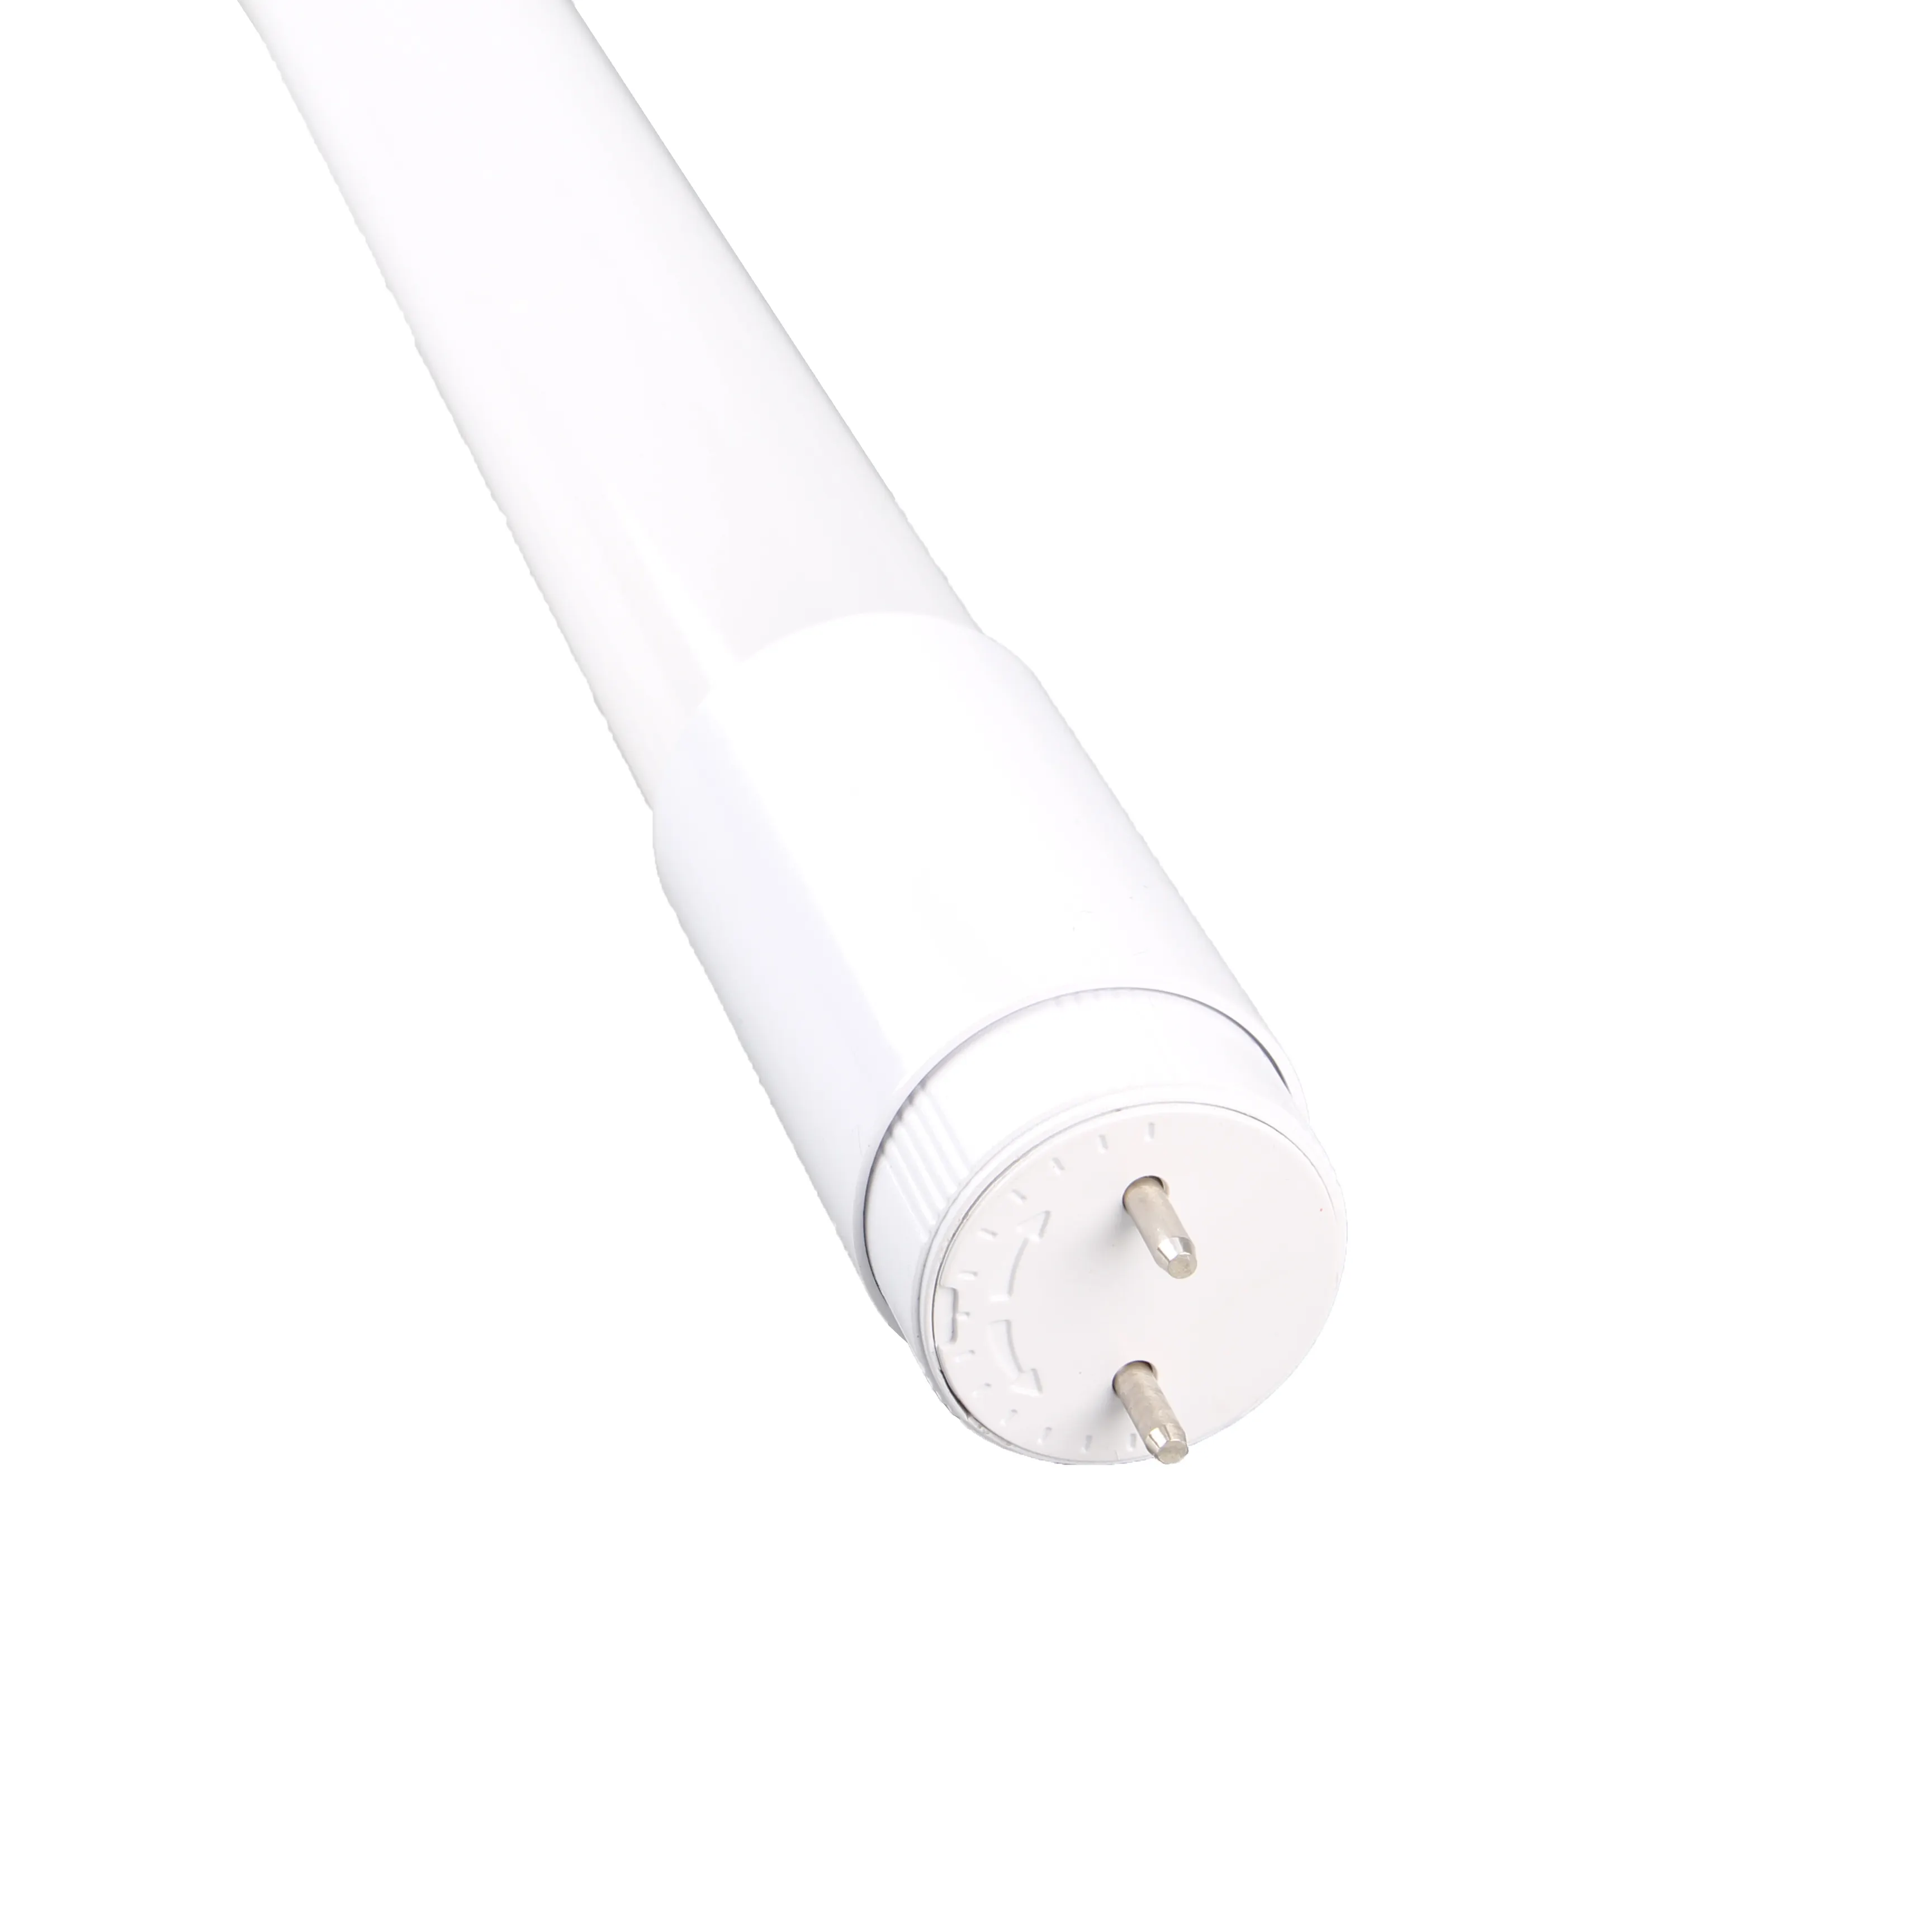 Tubo de luz led t8, venda quente, fornecedor, luzes, tubo, lâmpada led, 18w, para sala de estar